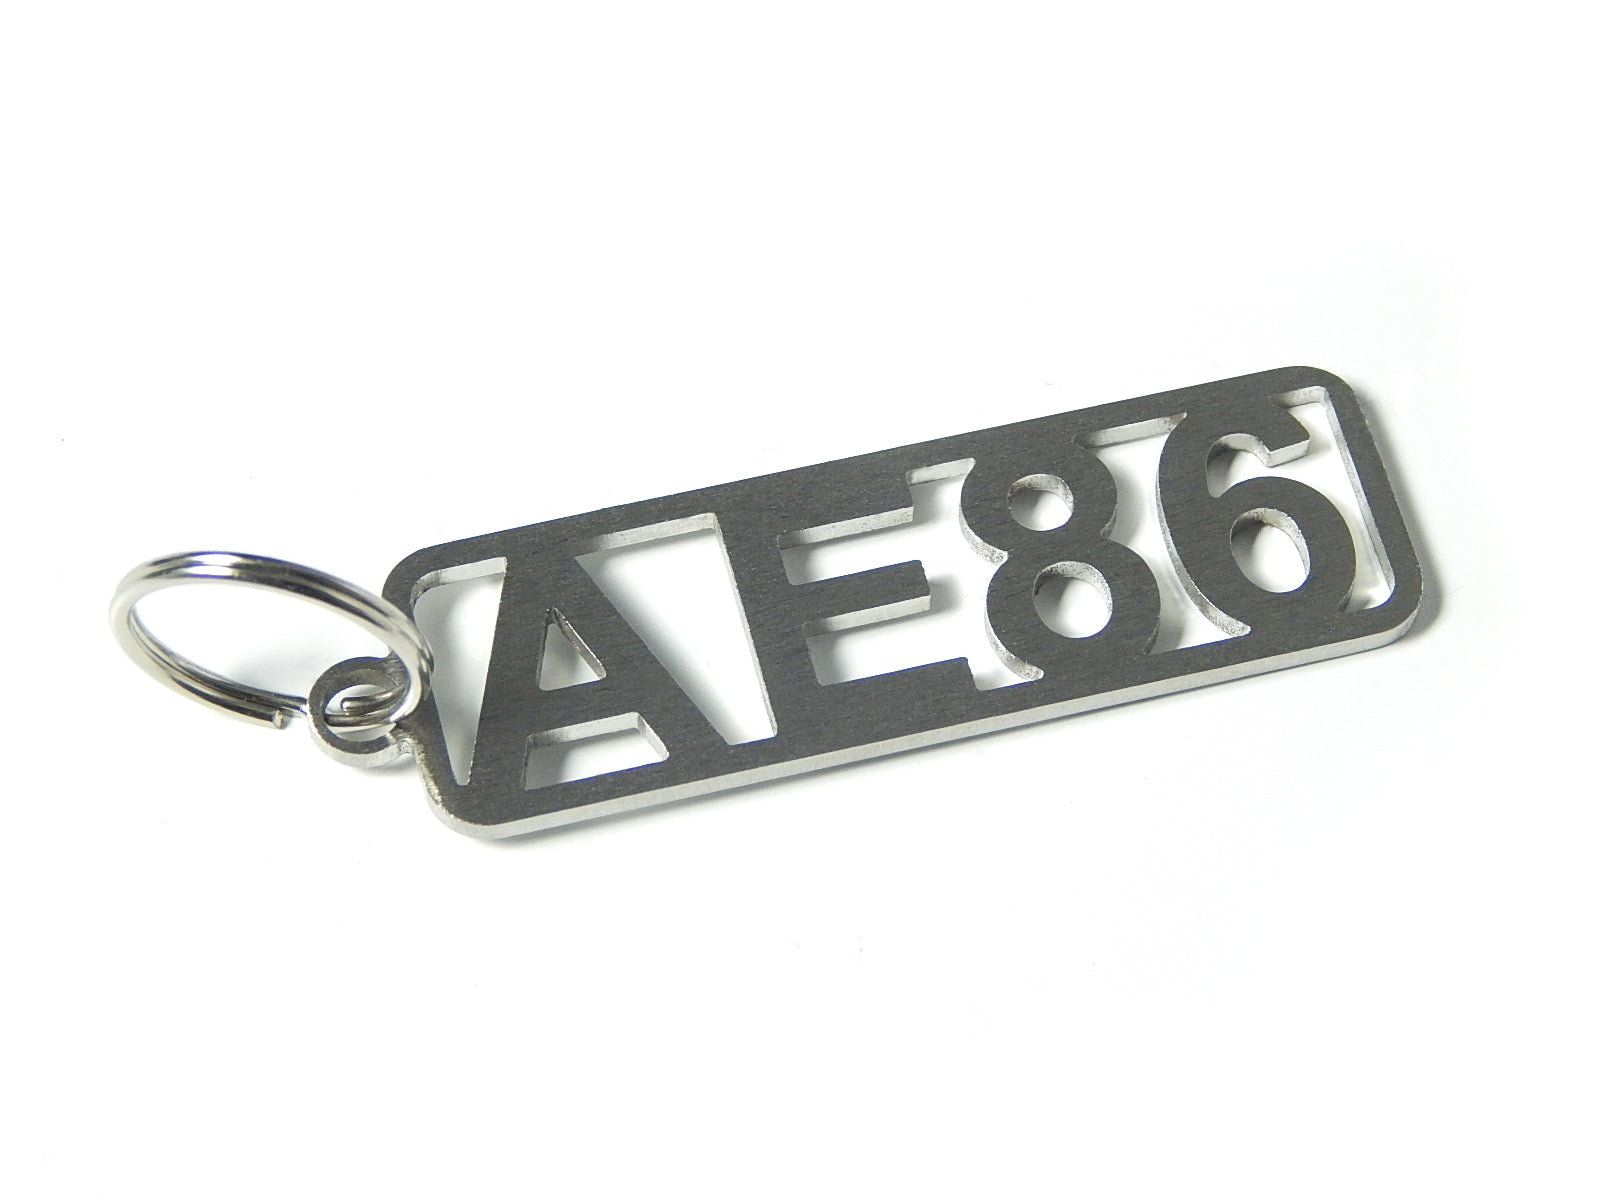 AE86 - DisagrEE - keychain - Schlüsselanhänger